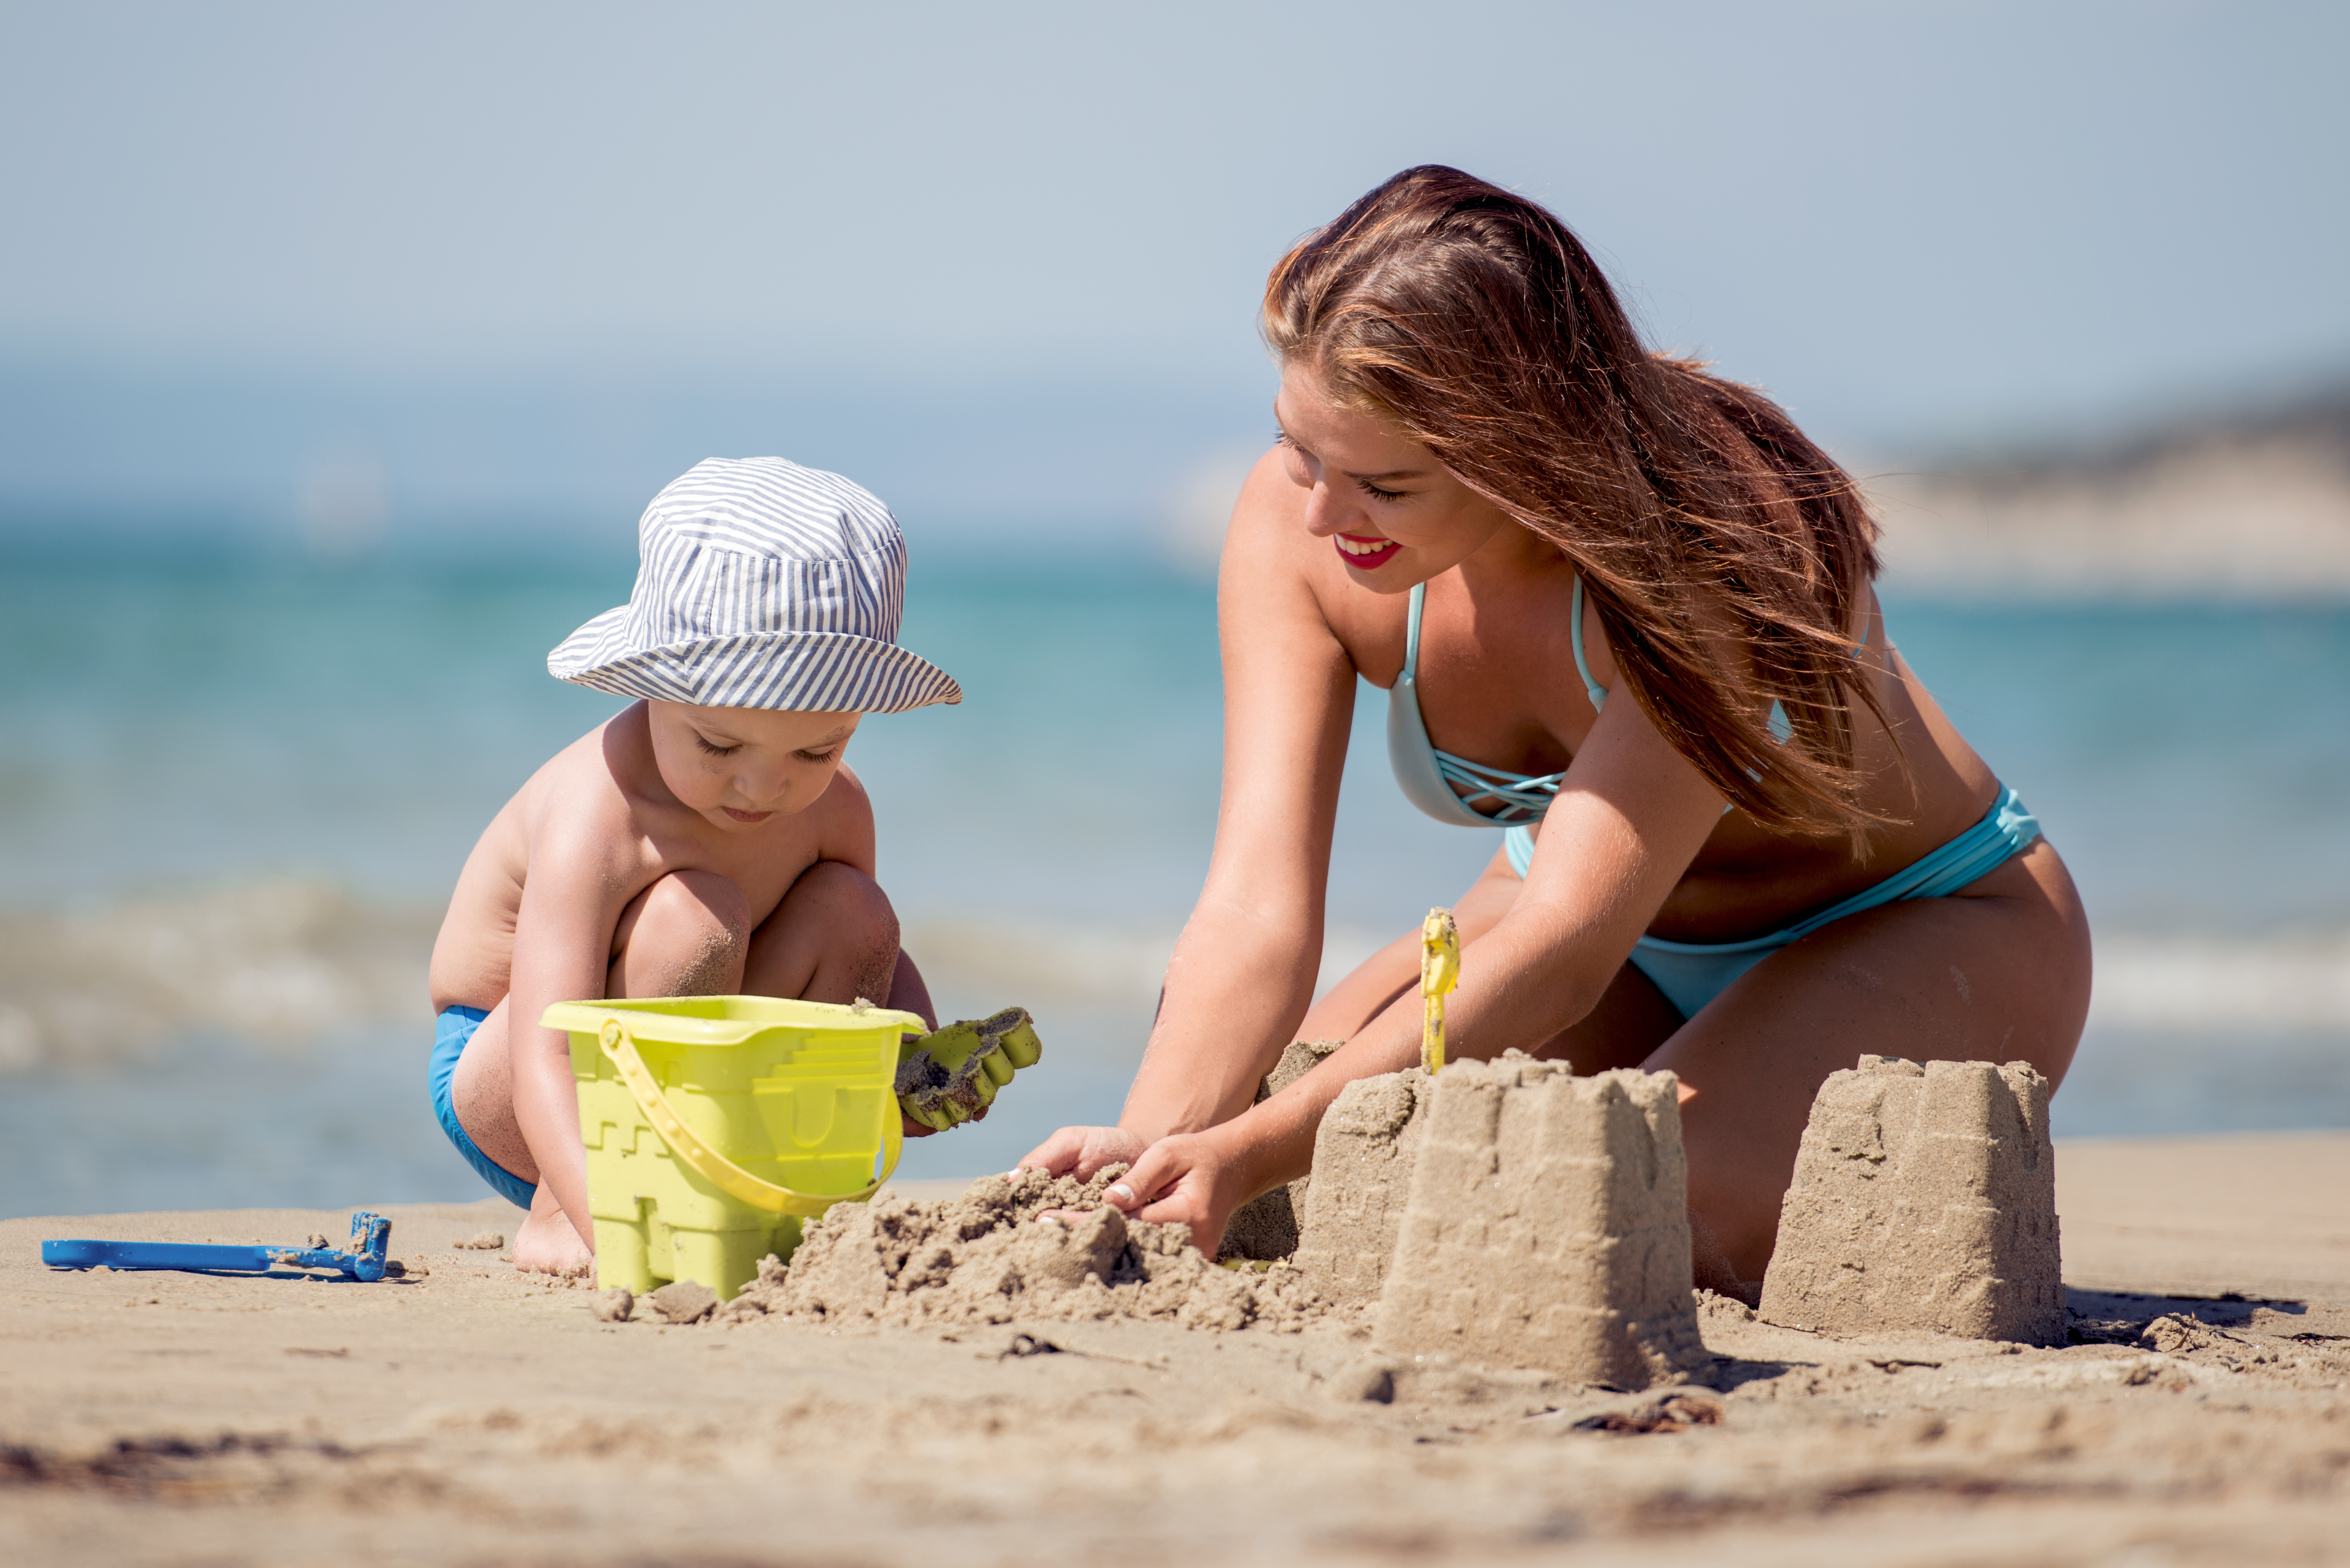 Assurer à la plage avec un enfant de moins de 5 ans